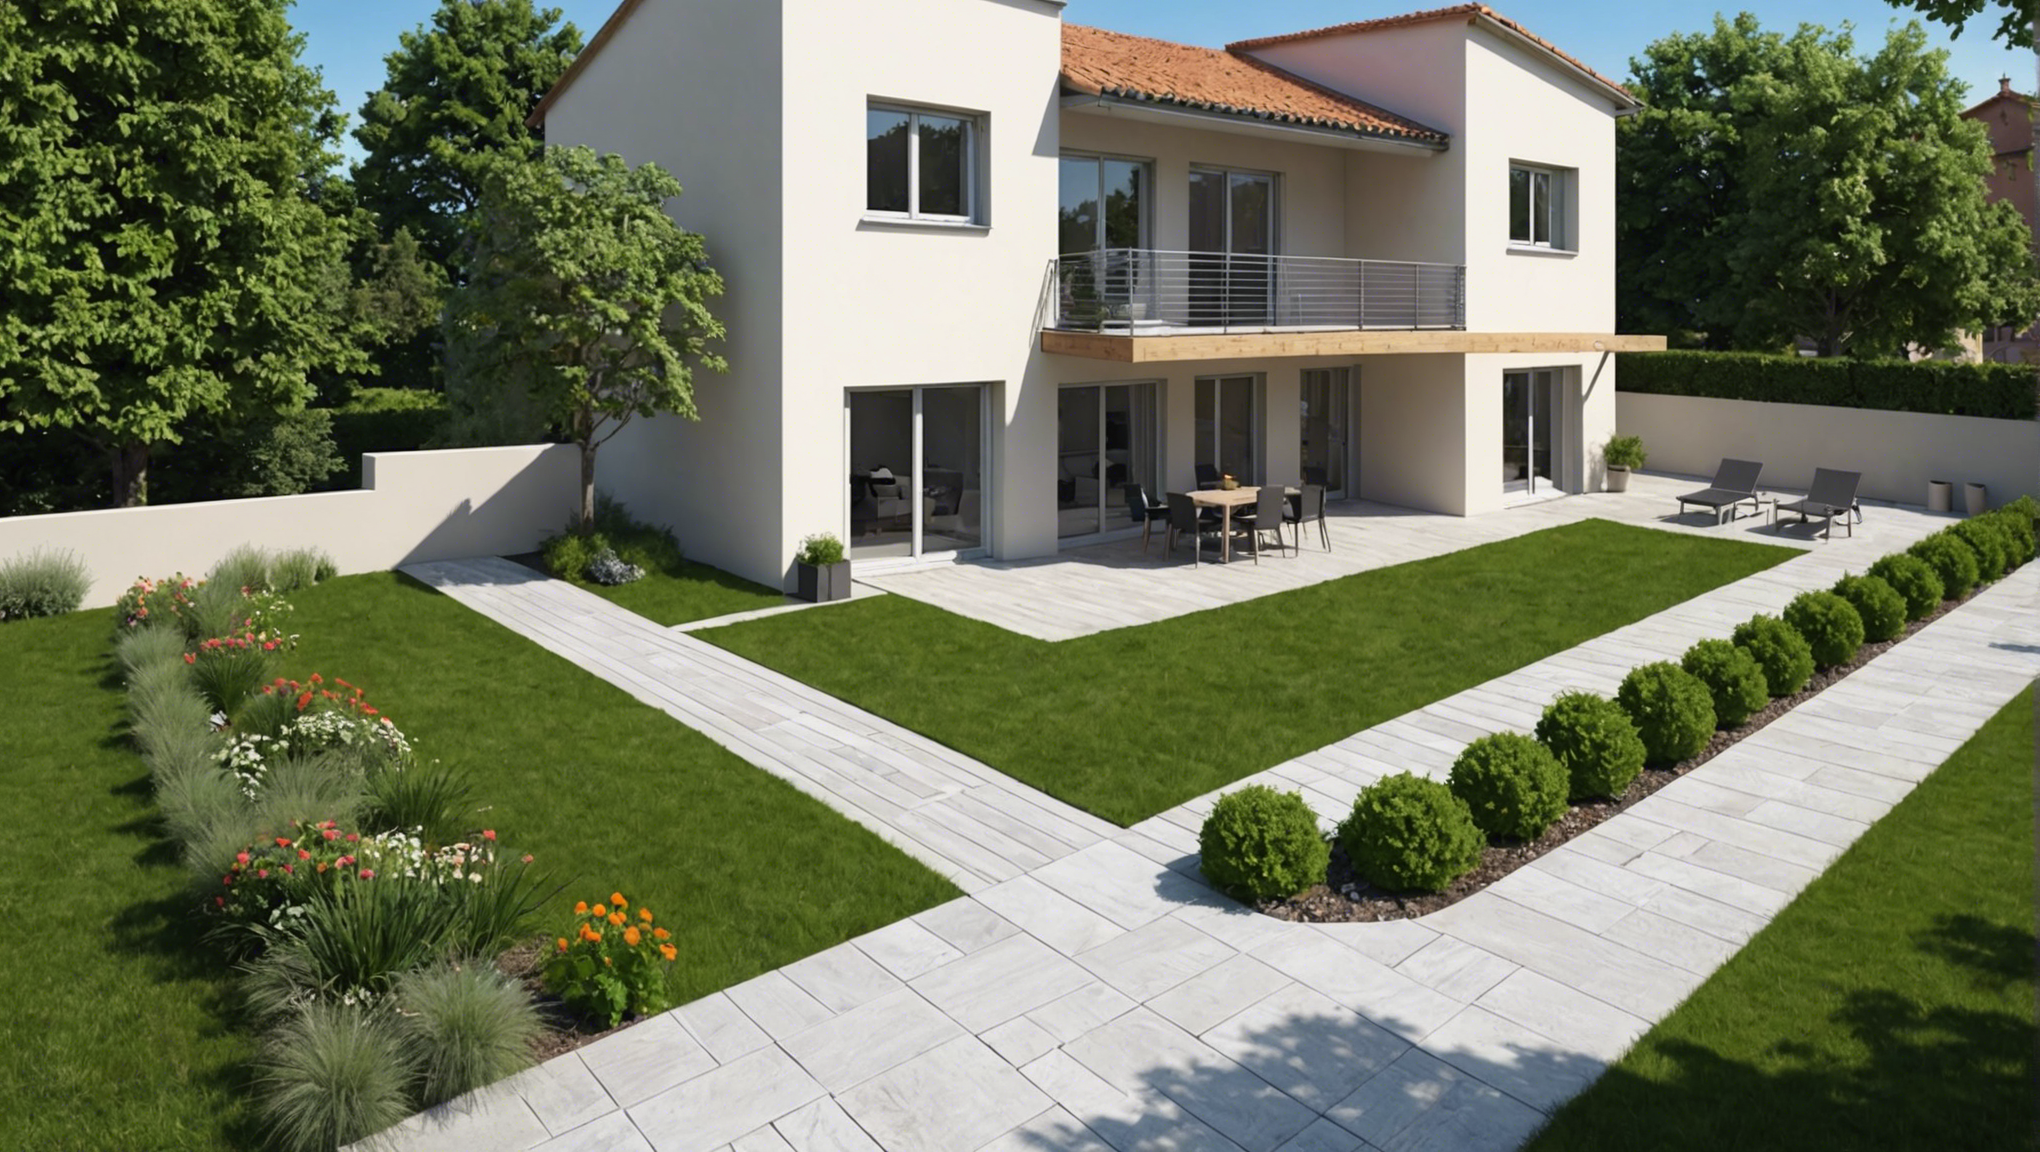 terrassement de maison à toulouse : confiez vos travaux de terrassement à des professionnels expérimentés pour un résultat de qualité.